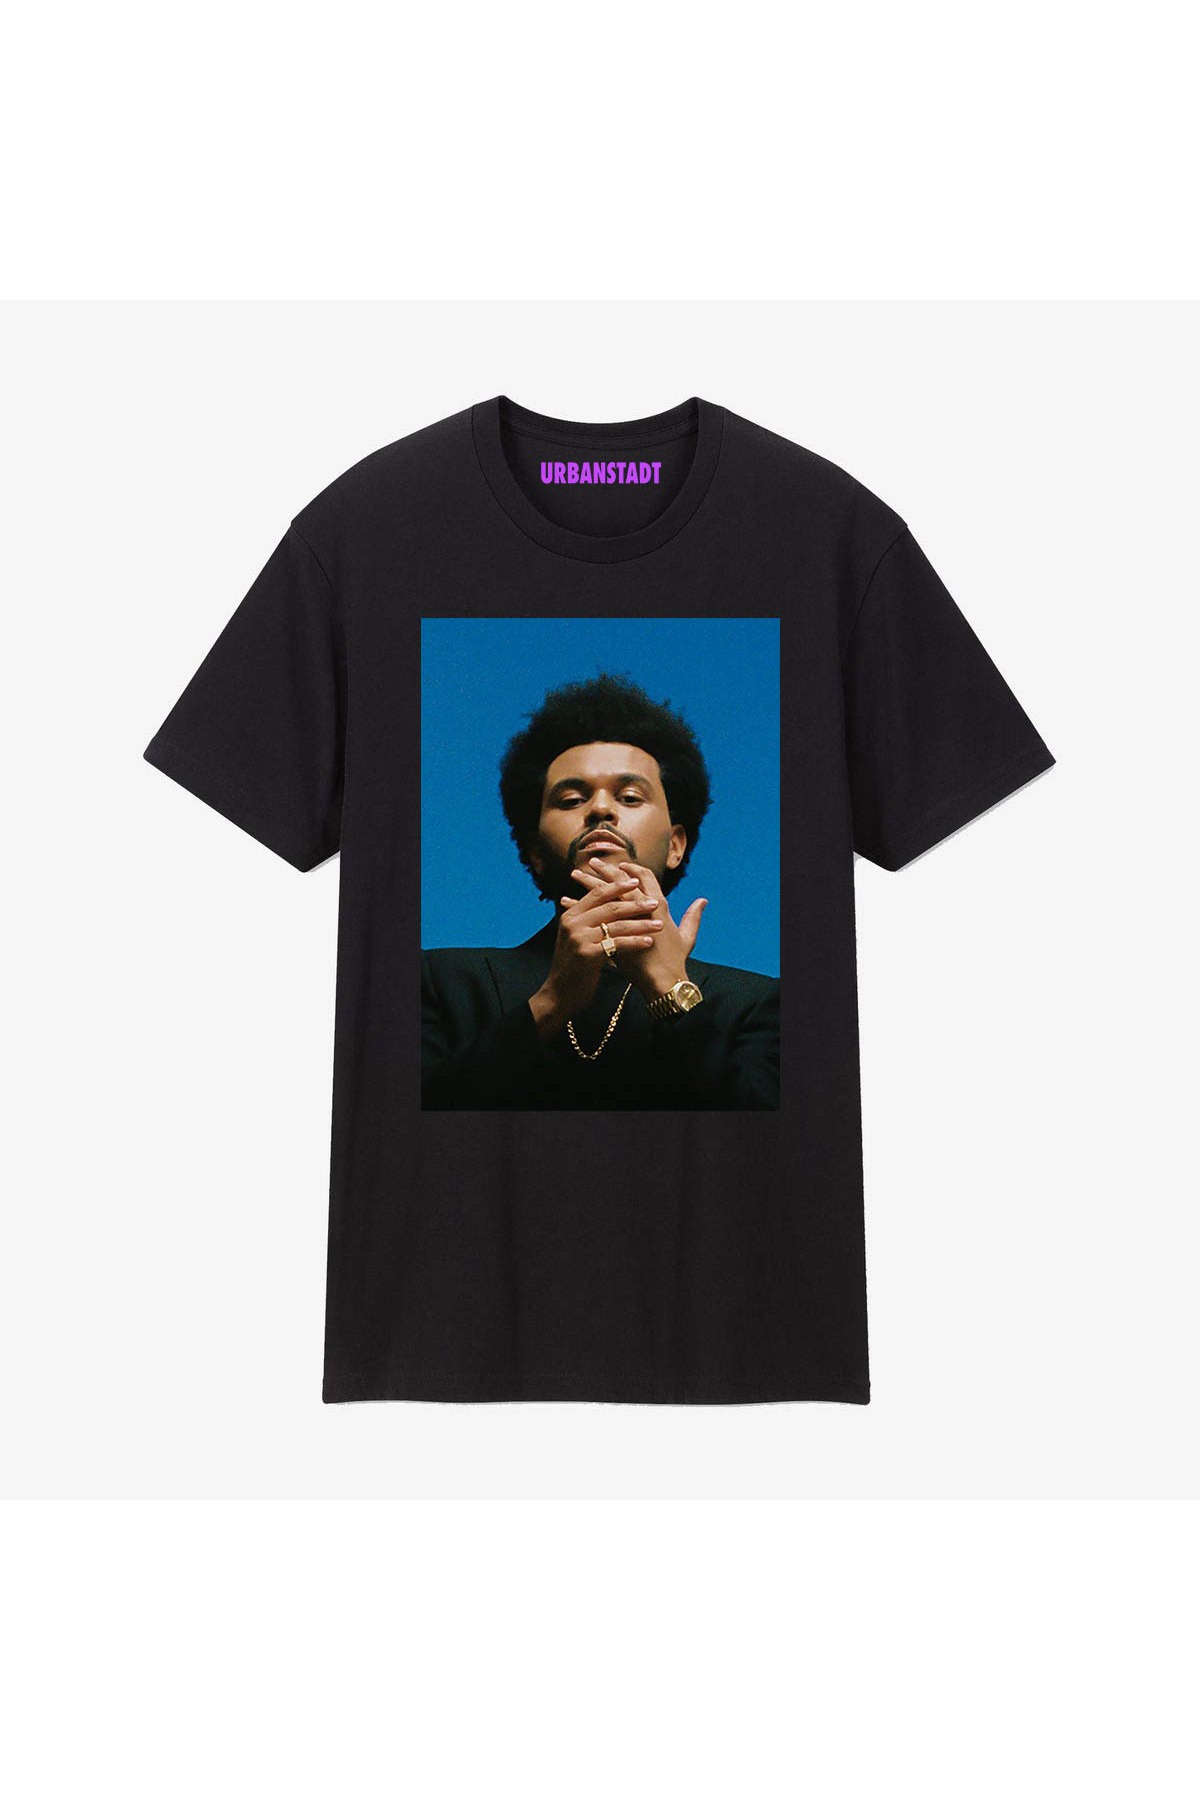 The Weeknd Siyah Tişört